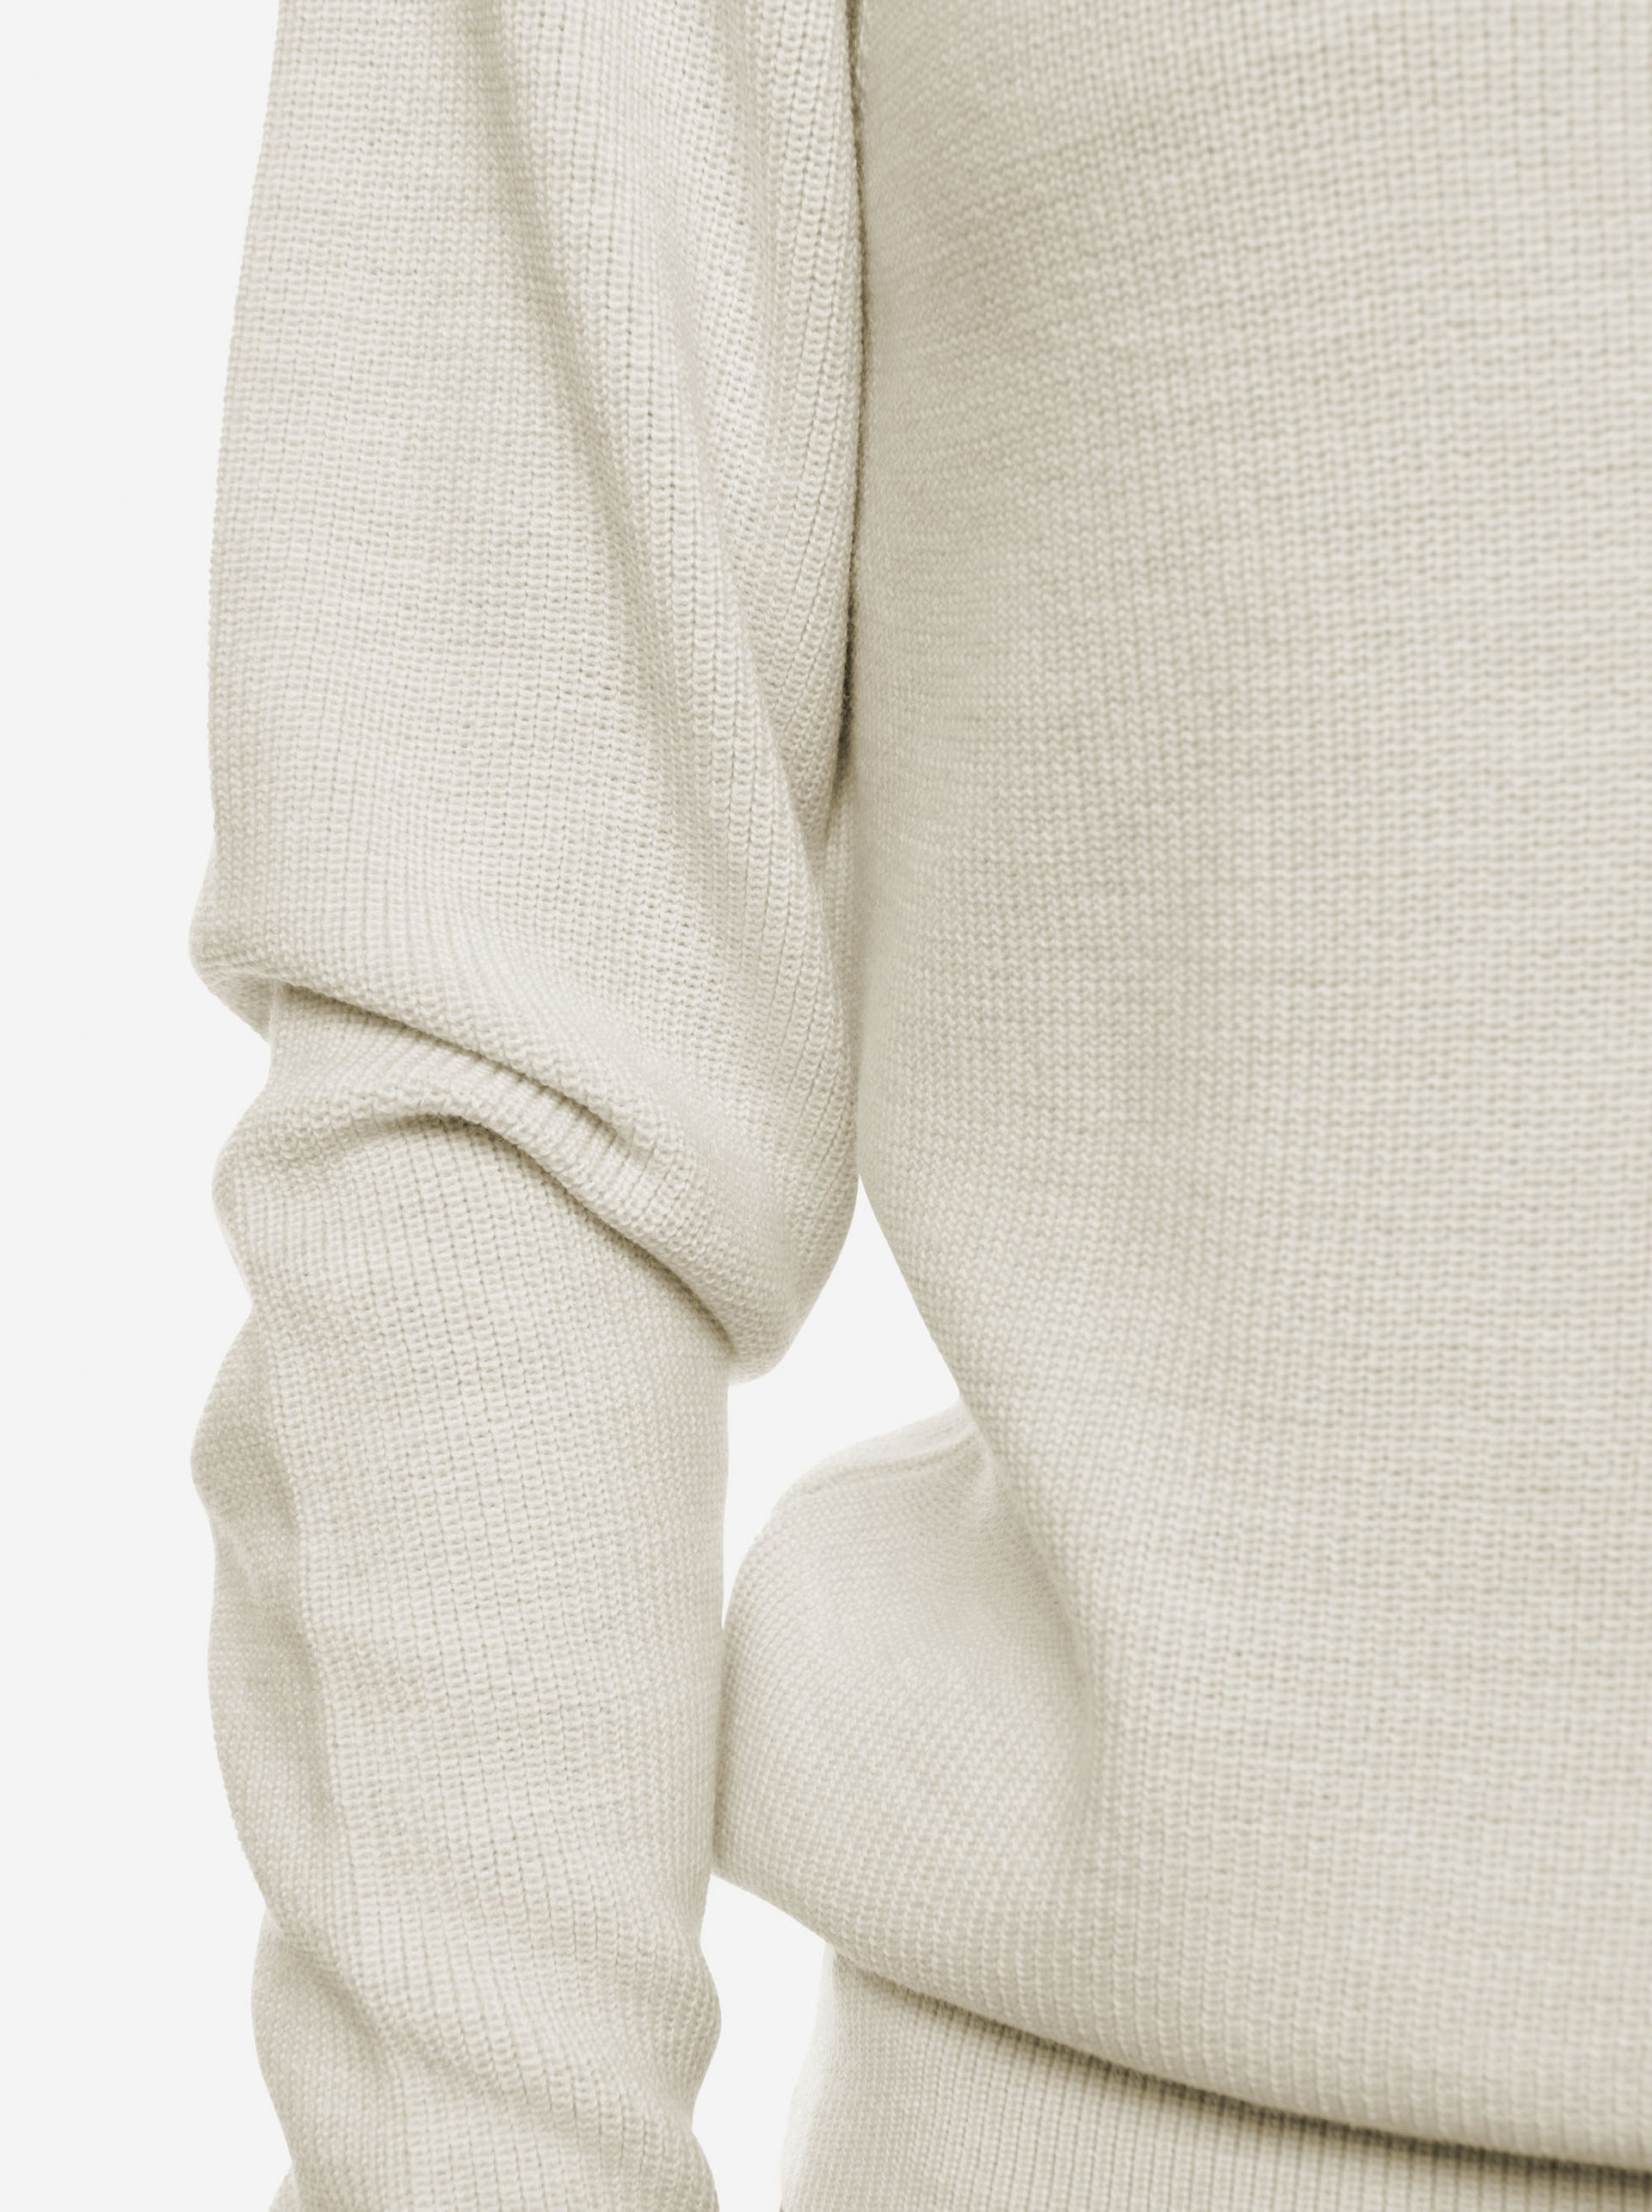 Teym • The Merino Sweater for women • Crewneck • White • 100% Merino wool